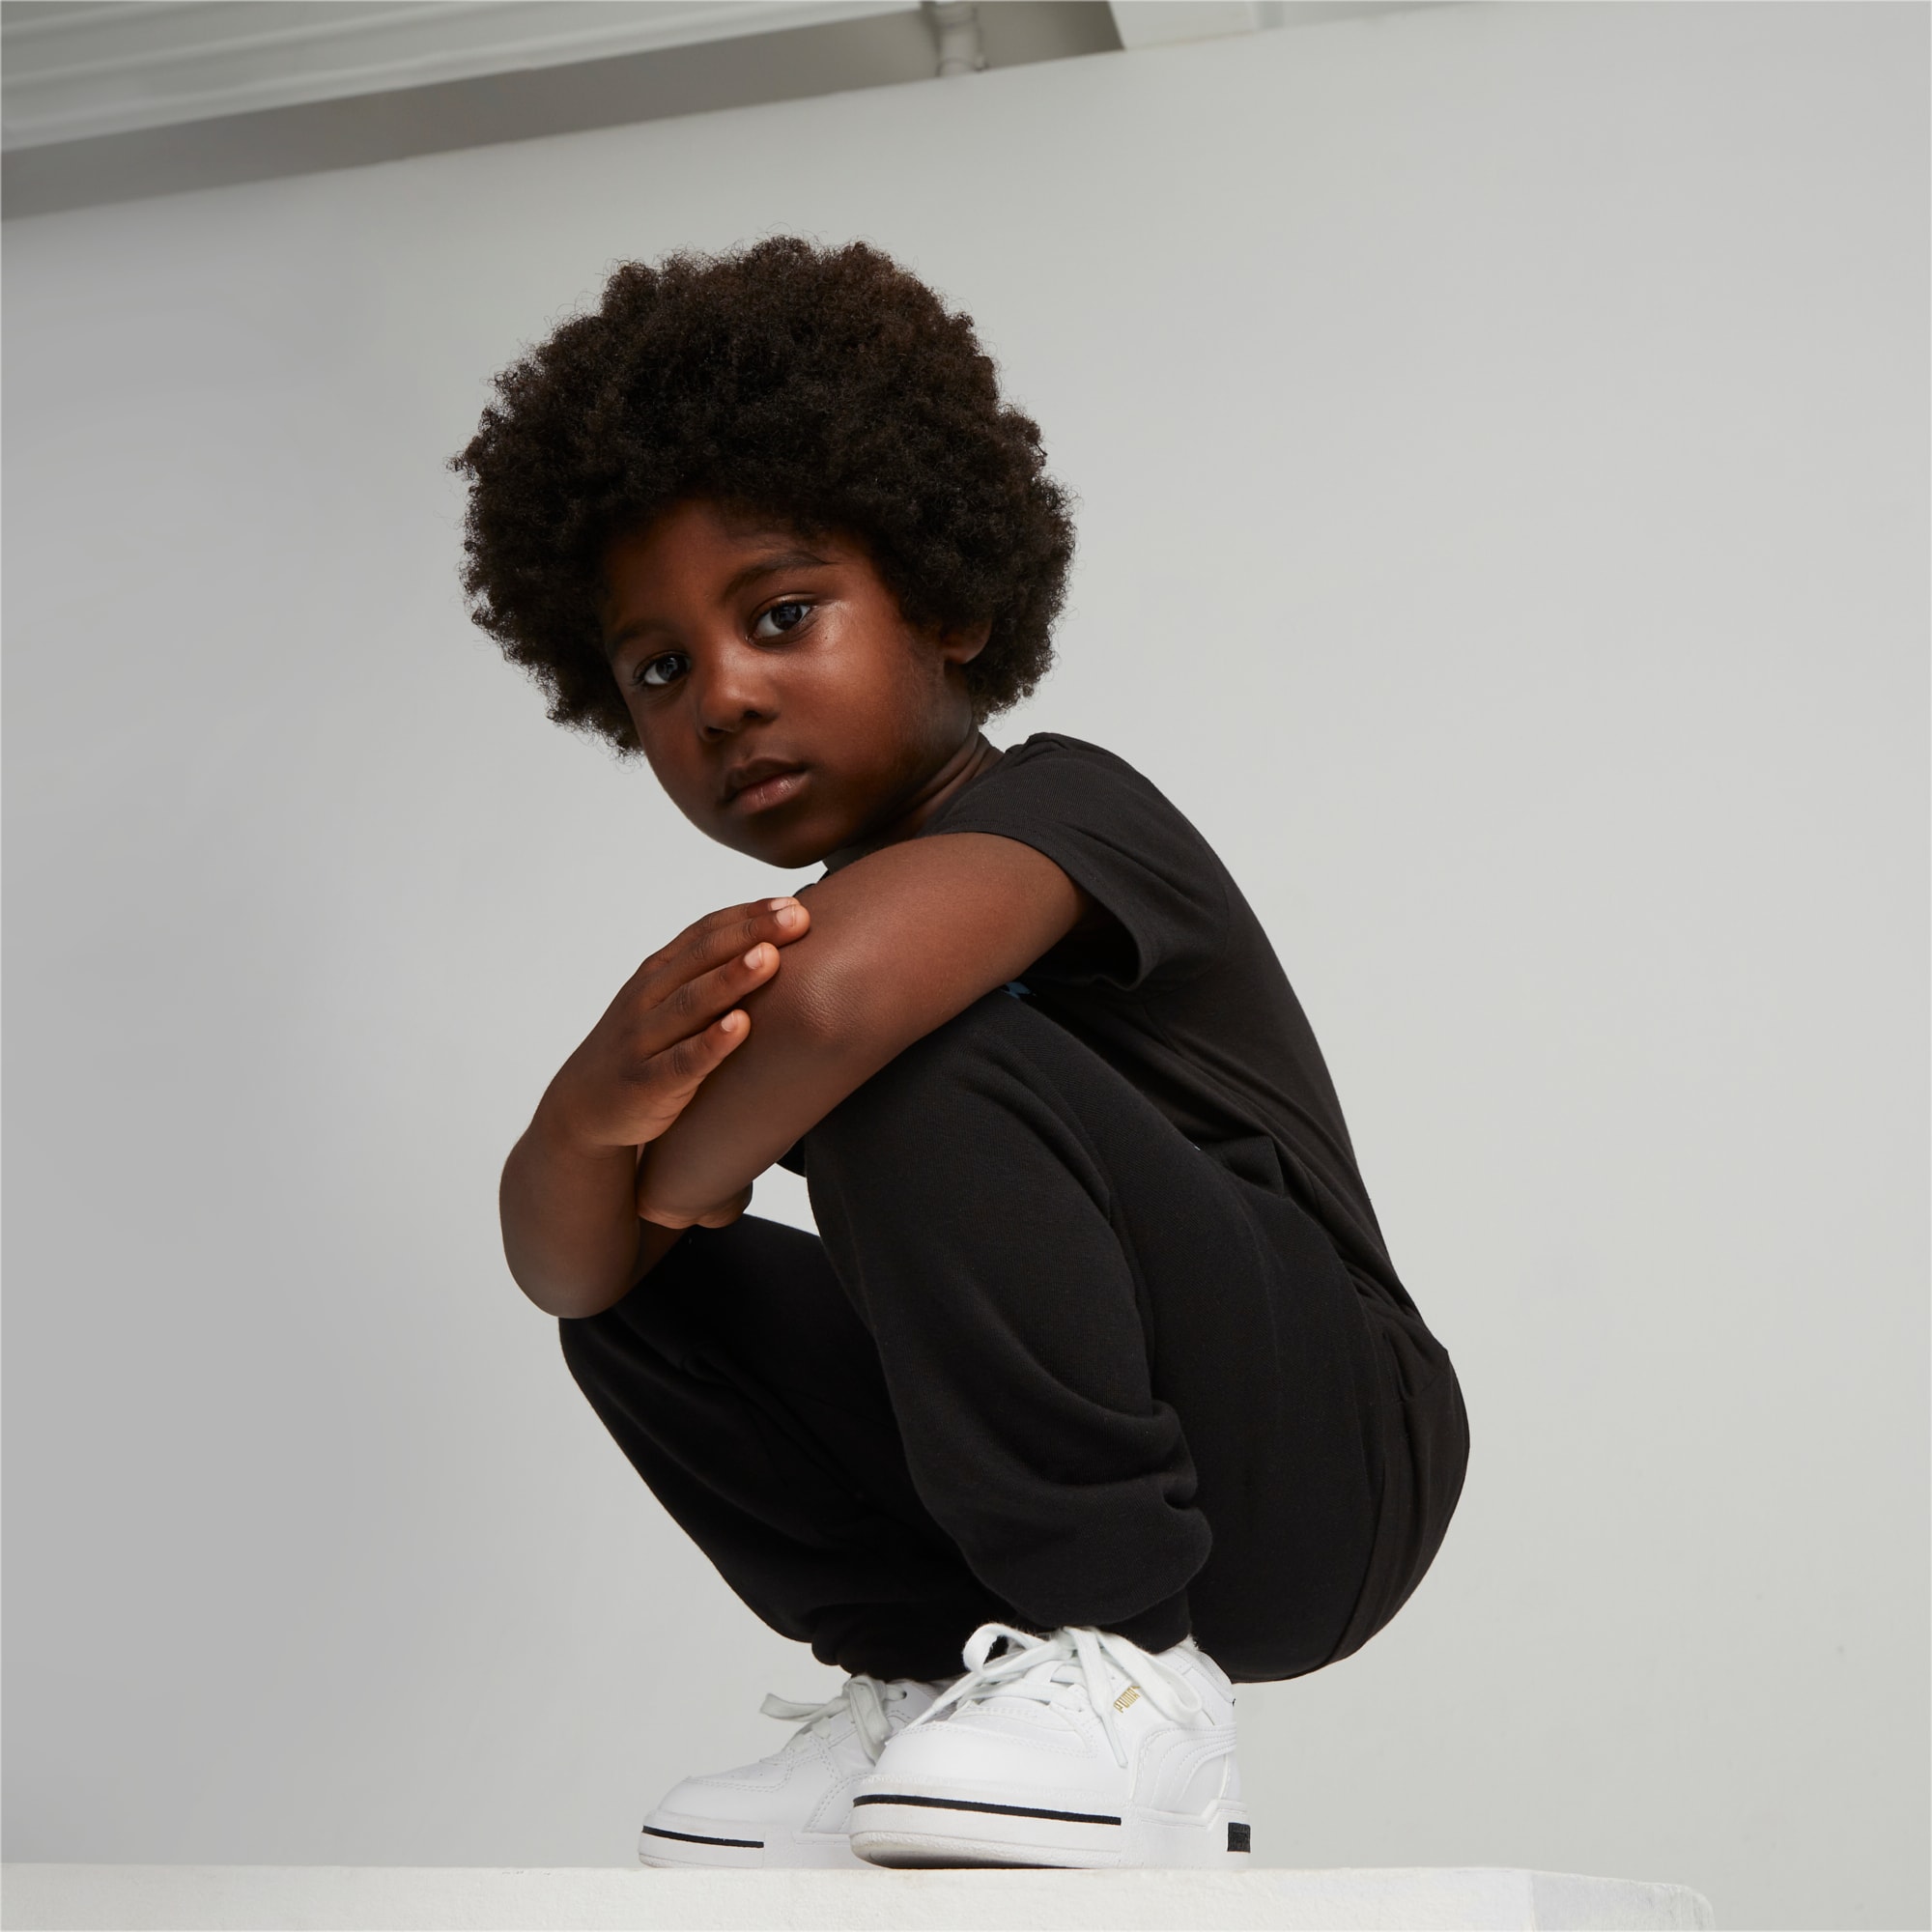 PUMA Chaussure Pantalon De Survêtement Essentials Mix Match Enfant, Noir